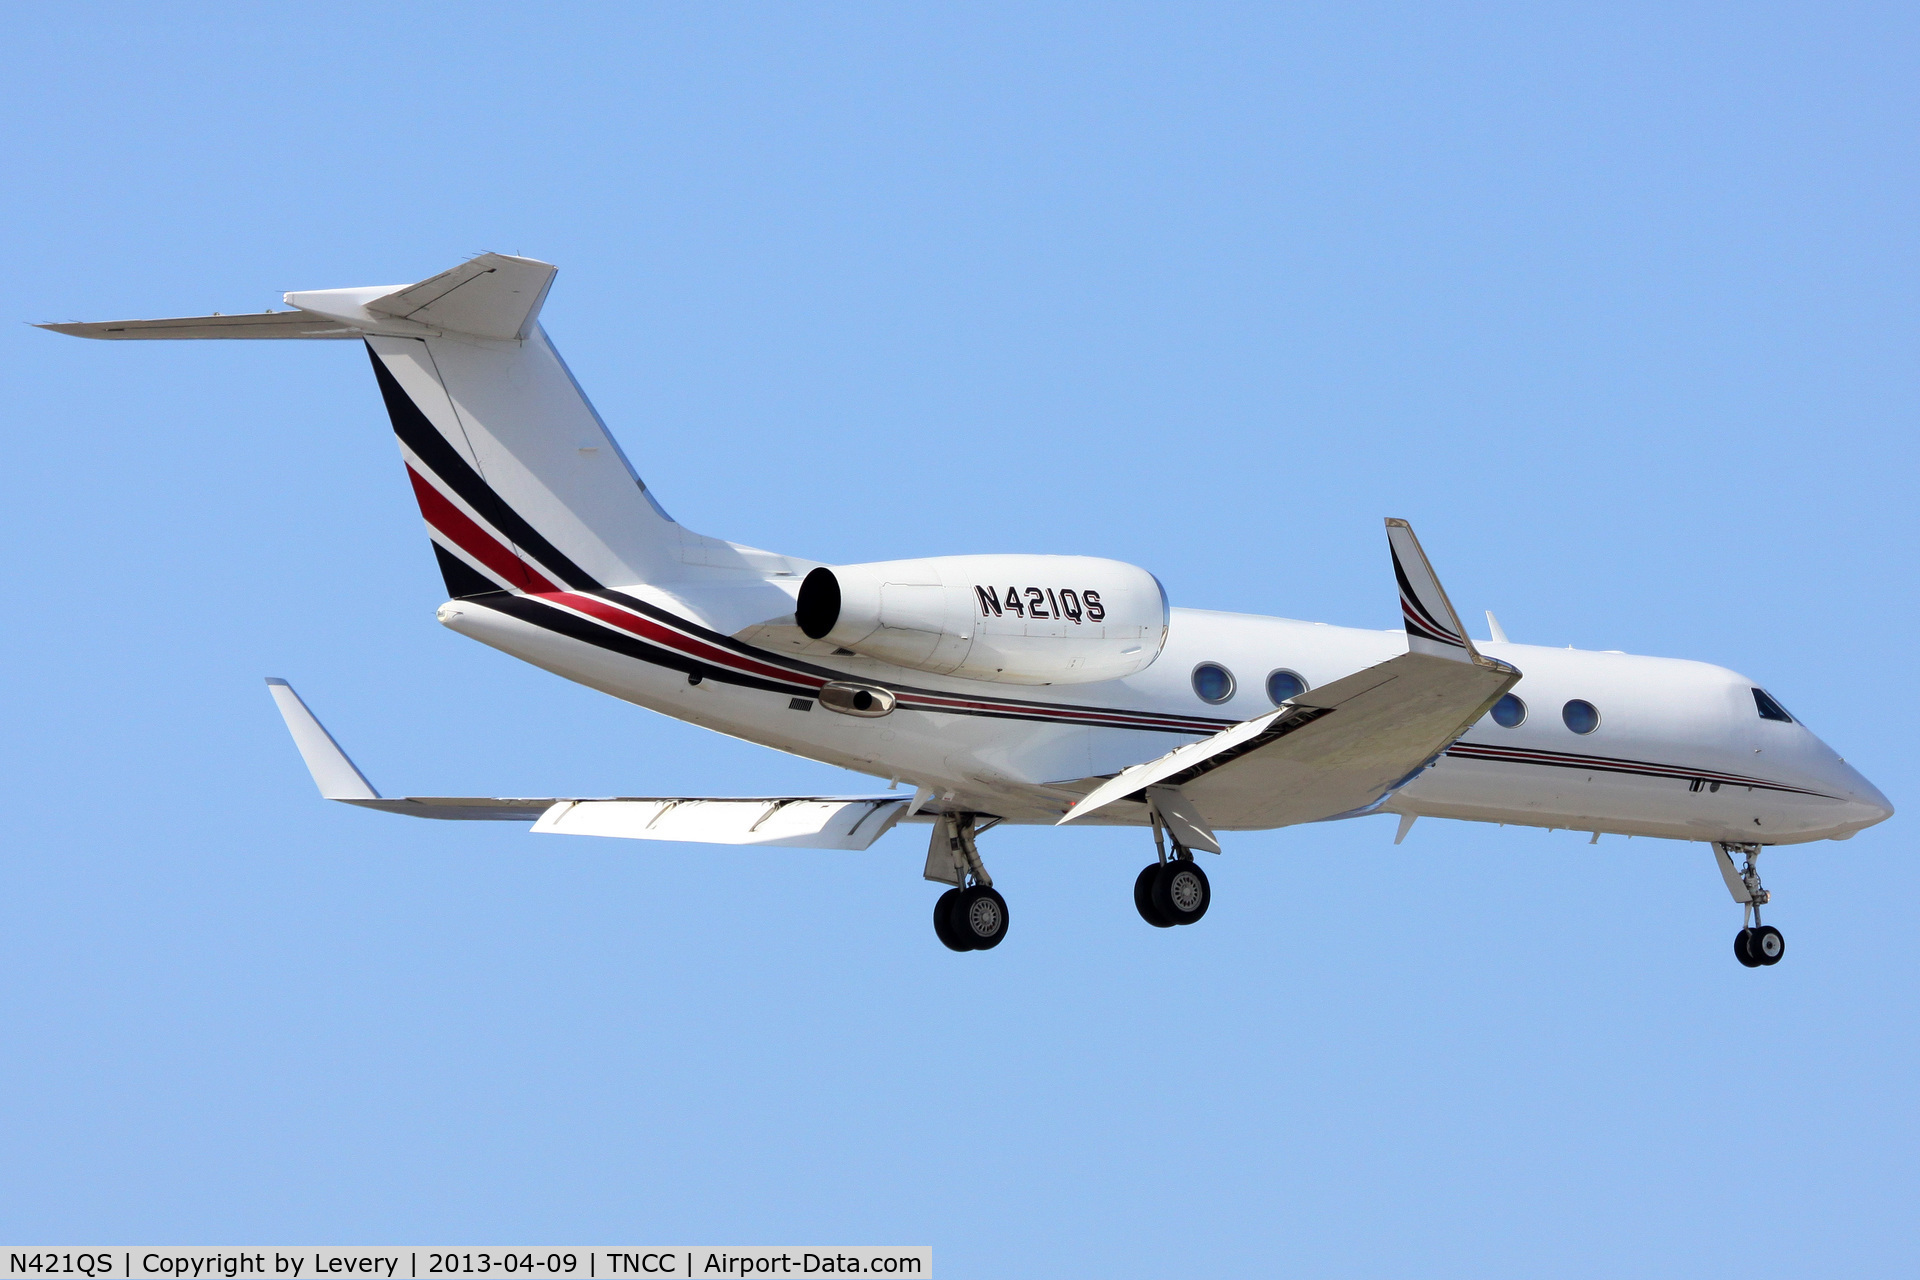 N421QS, 2008 Gulfstream Aerospace GIV-X (G450) C/N 4114, Final RWY 11.